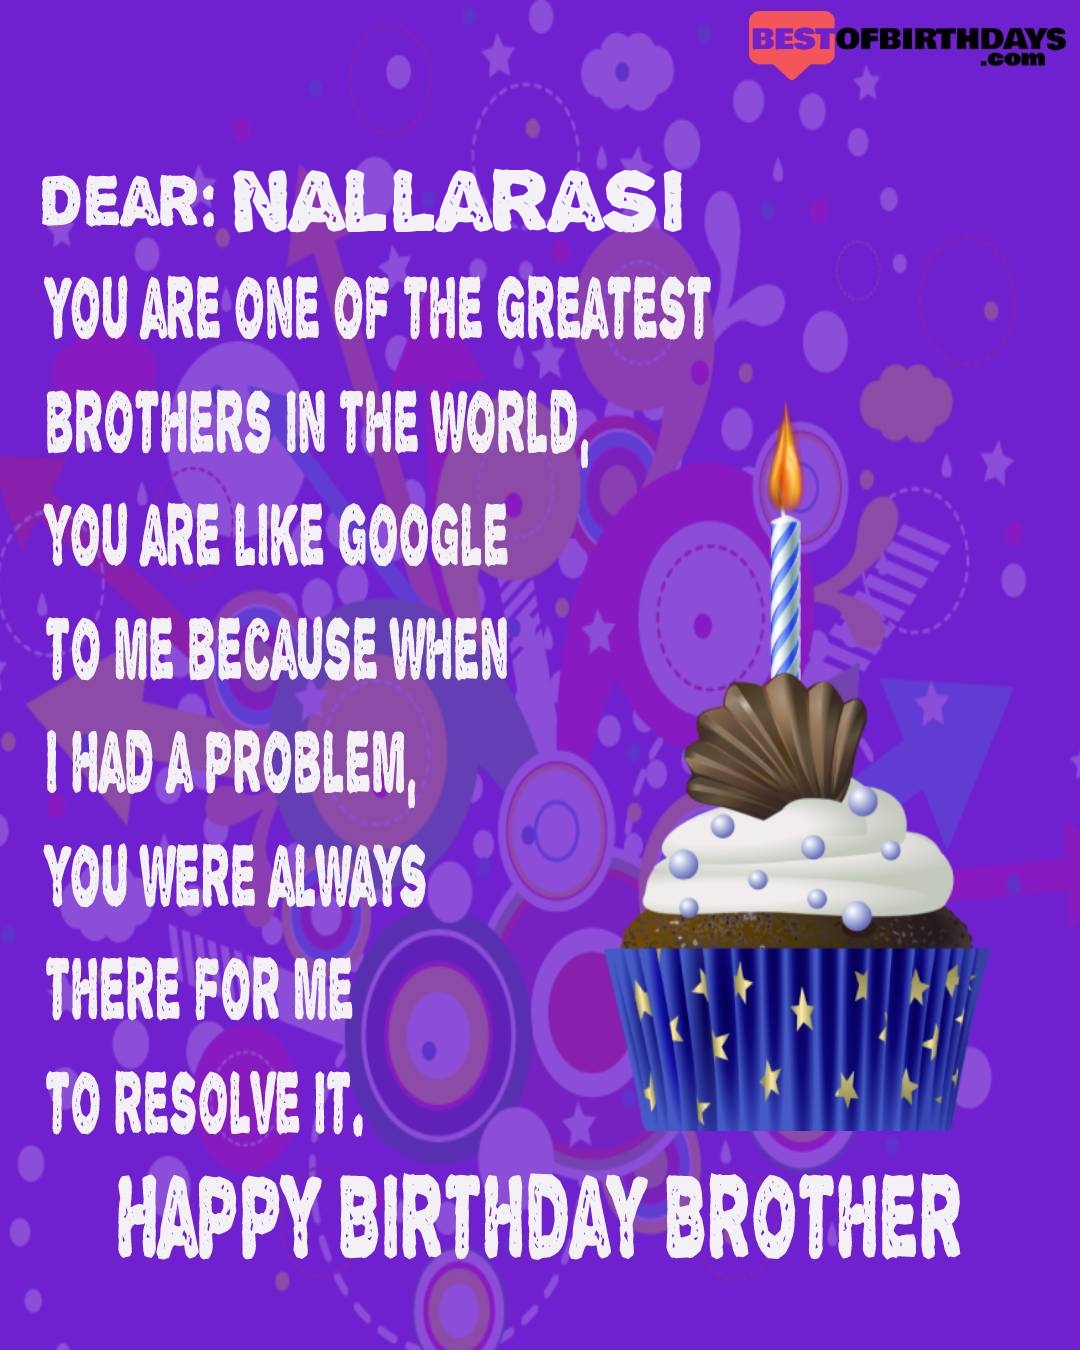 Happy birthday nallarasi bhai brother bro